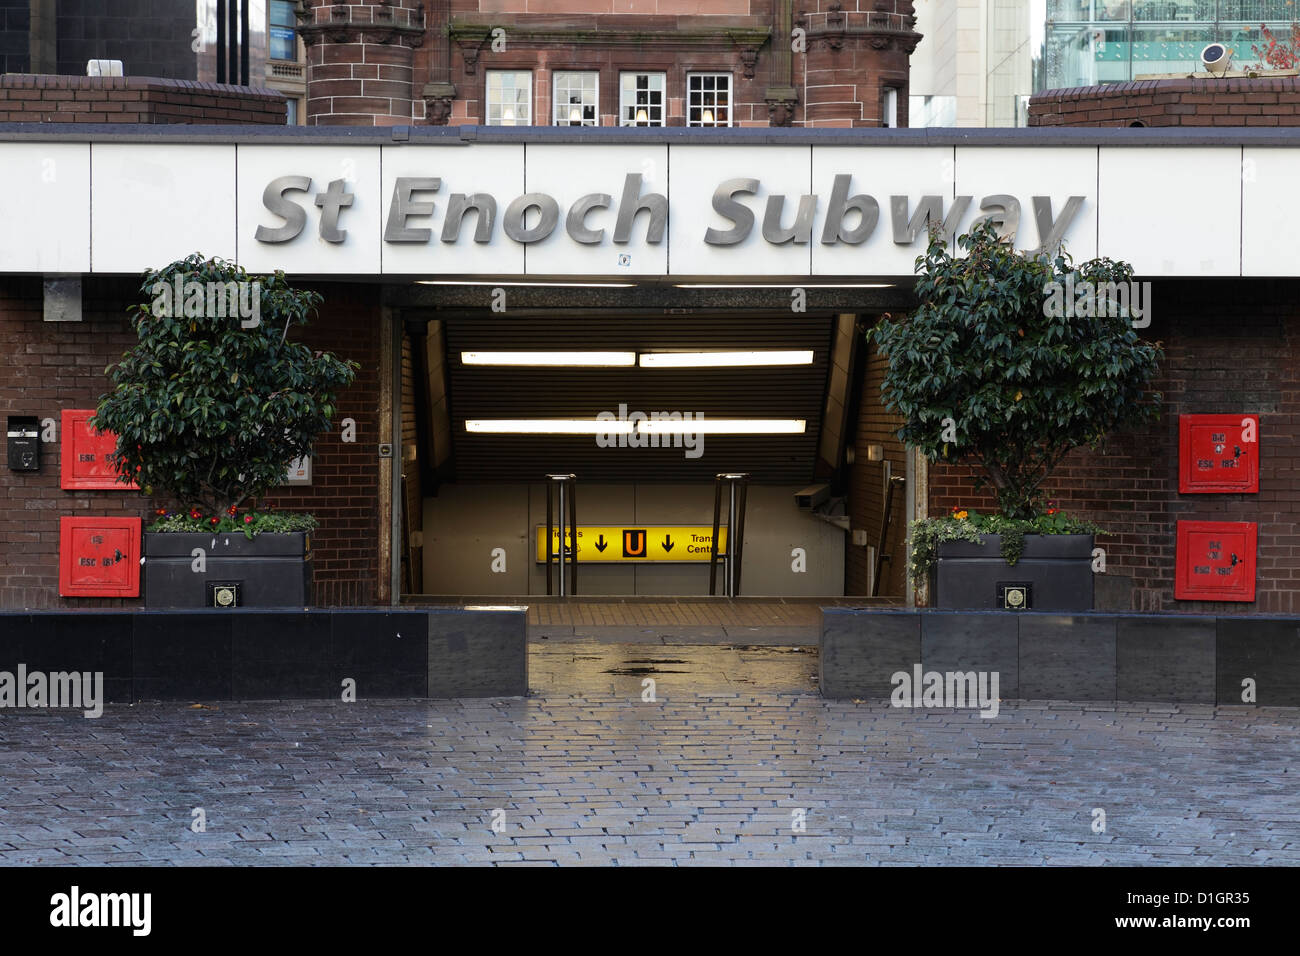 L'ancienne entrée de la station de métro St Enoch dans le centre-ville de Glasgow, en Écosse, au Royaume-Uni, a été remplacée Banque D'Images